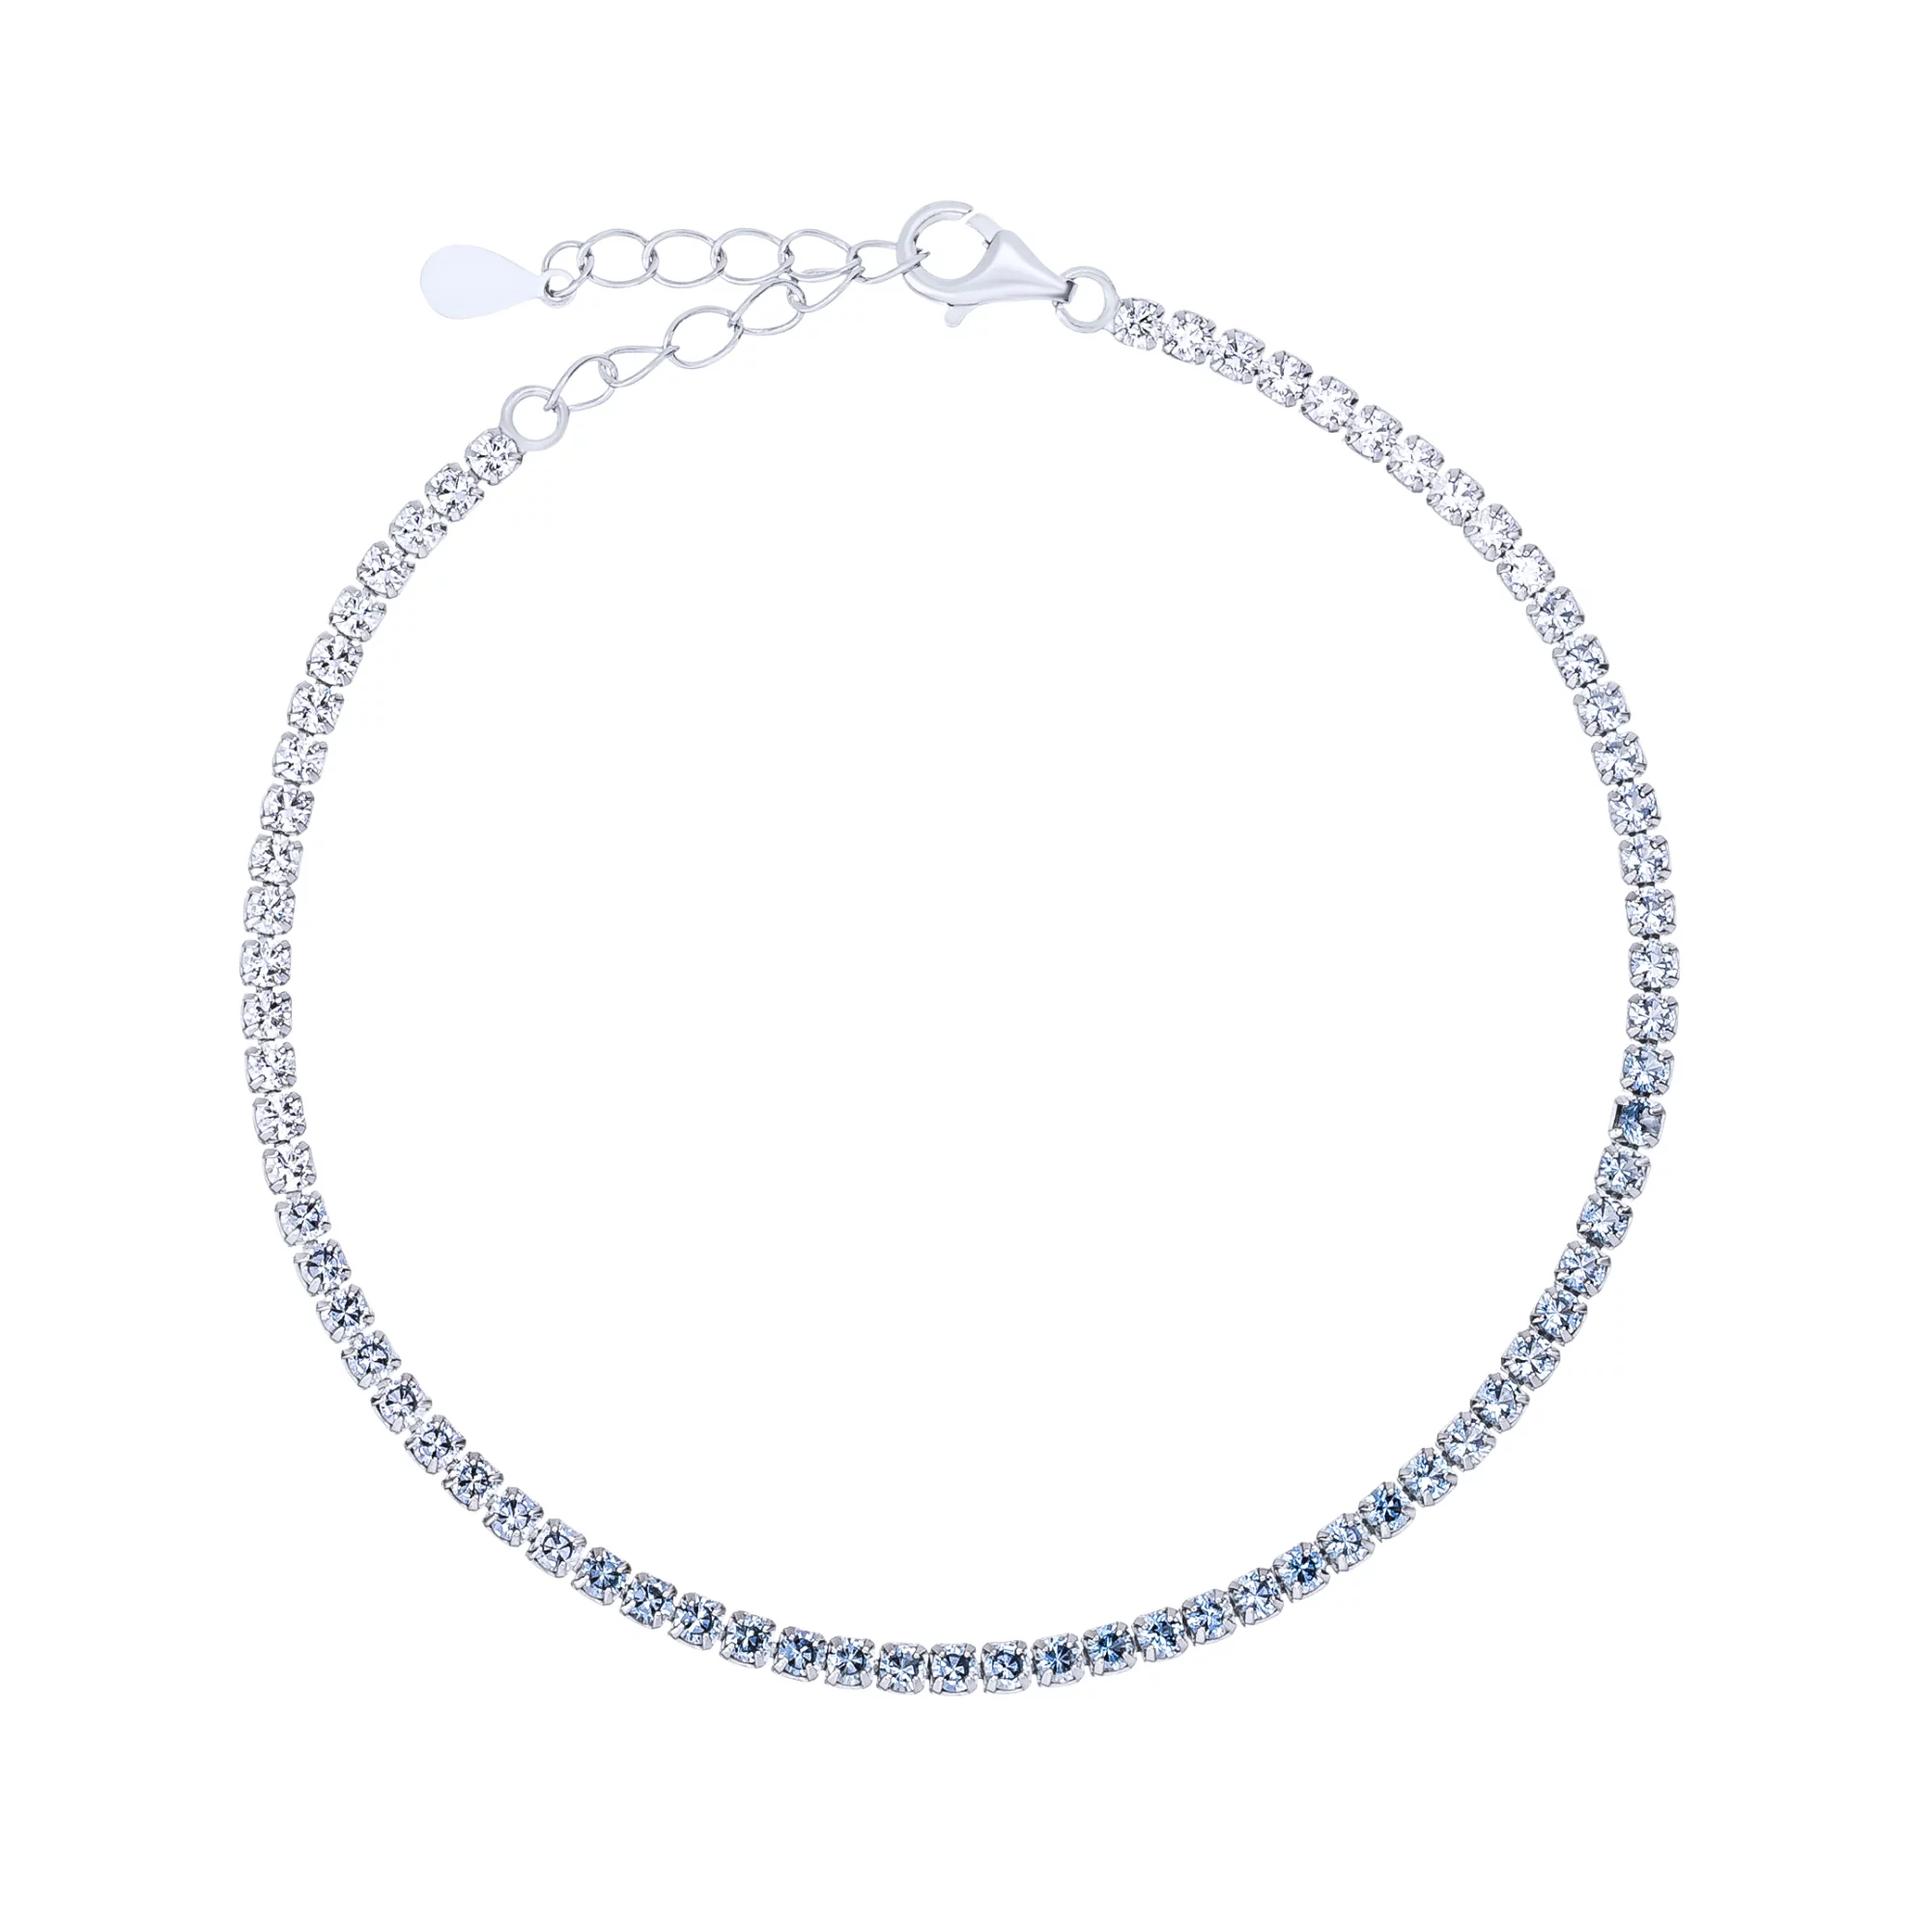 Теннисный браслет из серебра с дорожкой фианитов - 1760520 – изображение 1